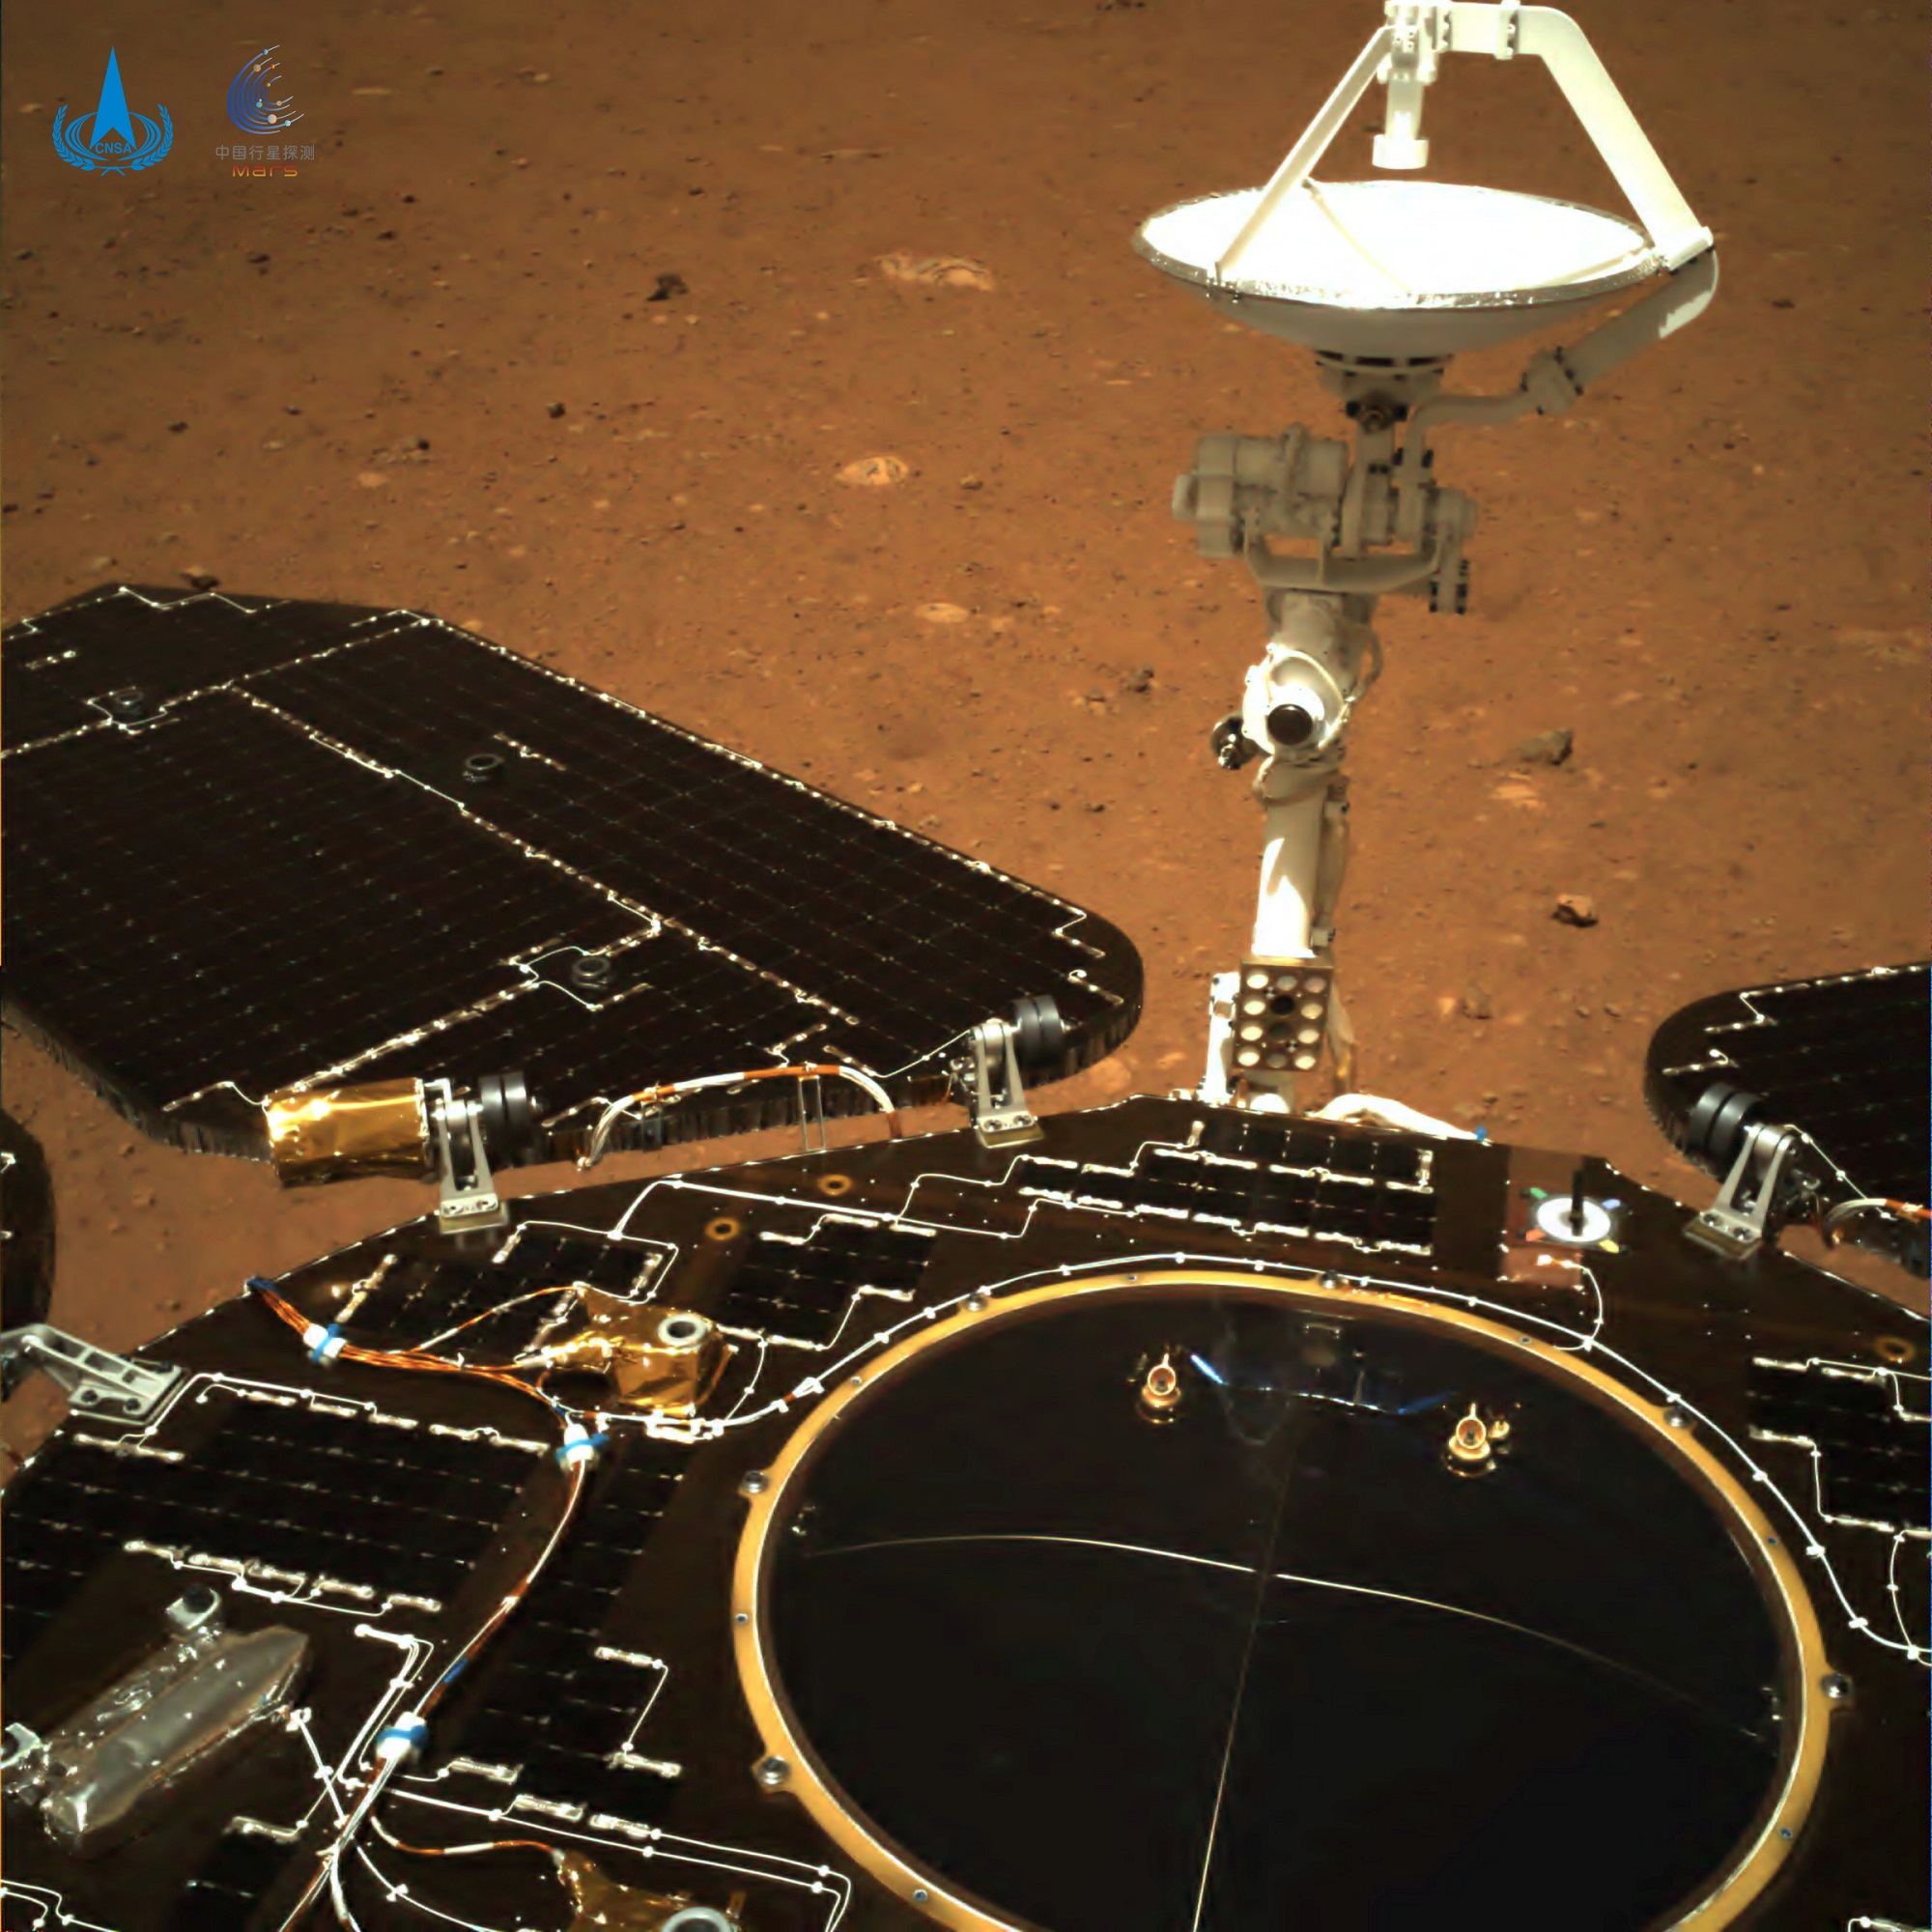 المسبار الجوال تشورونغ وهبوطه على سطح المريخ. (رويترز)